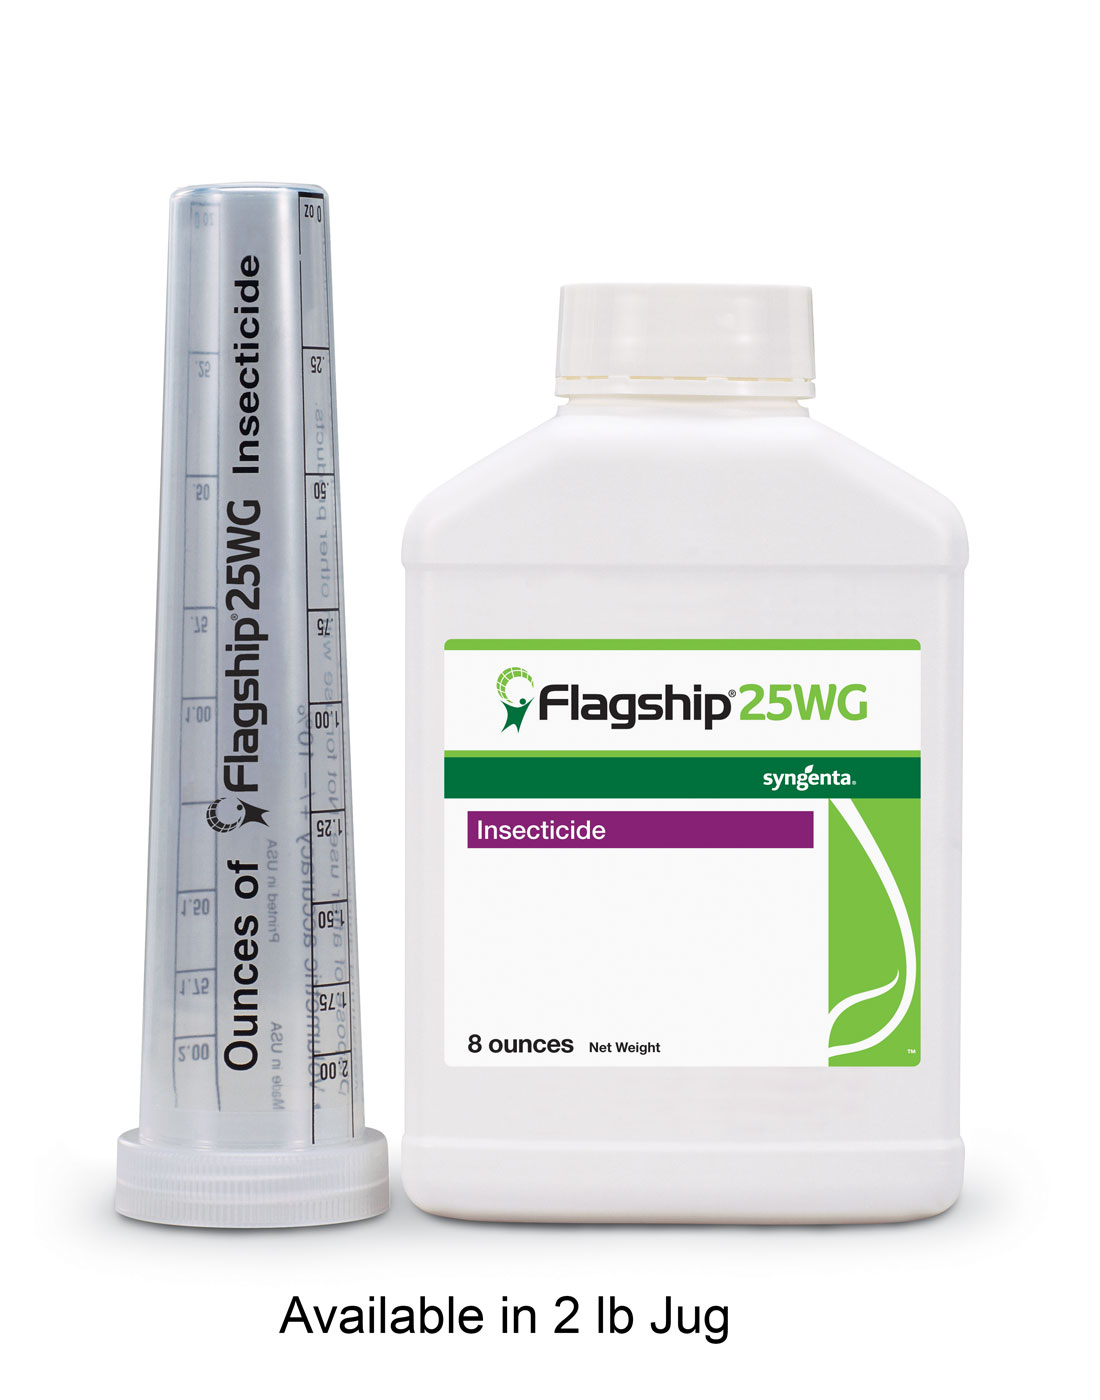 Flagship® 25WG 2 lb Jug - Insecticides